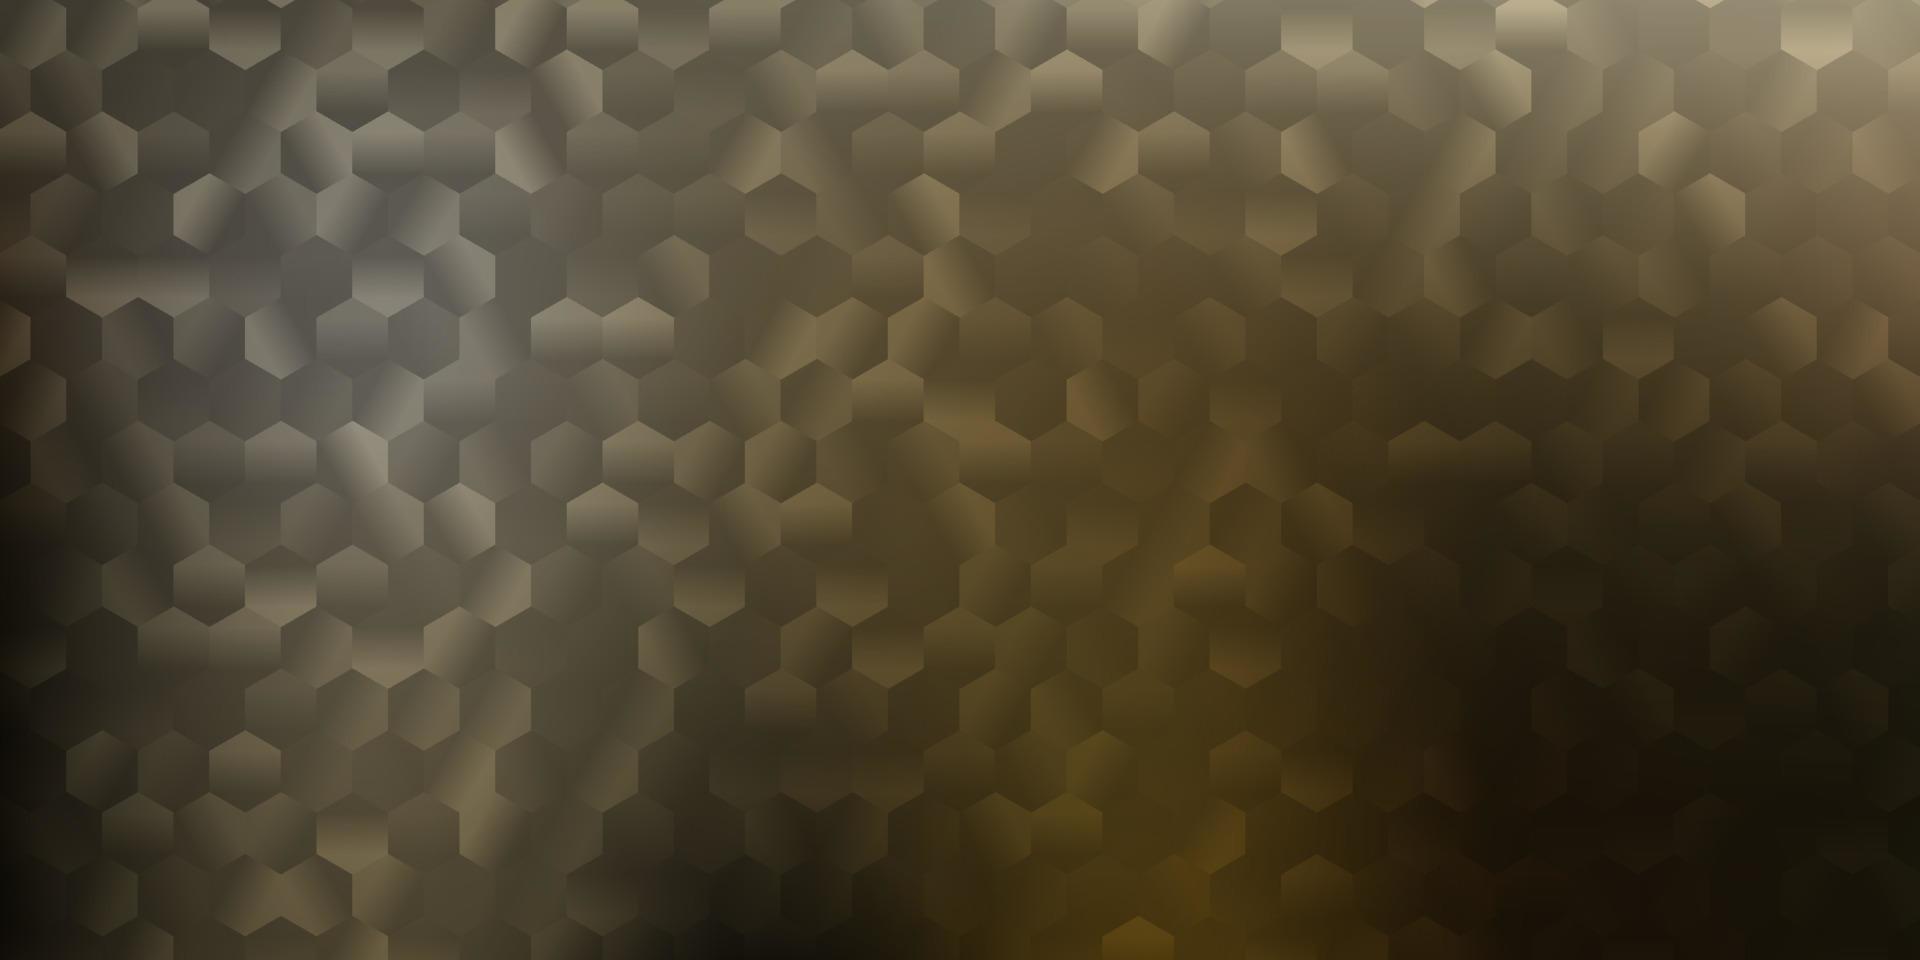 patrón de vector gris claro con hexágonos.